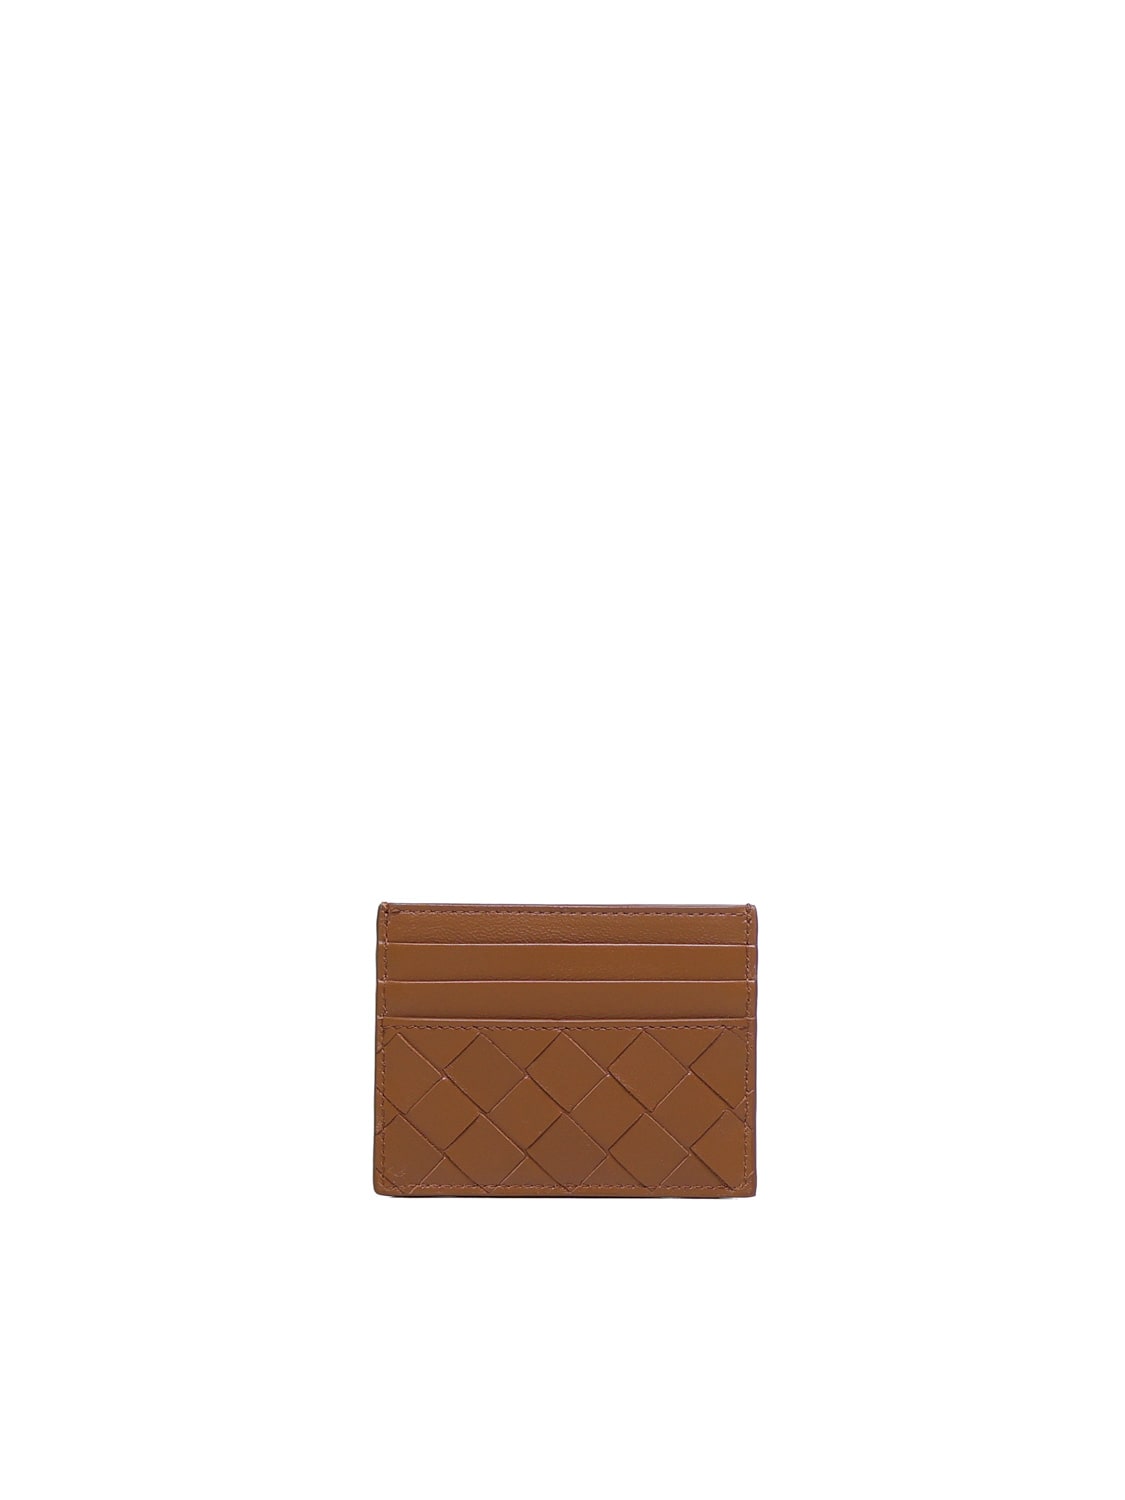 Bottega Veneta Brown Intrecciato Leather Cardholder In Wood